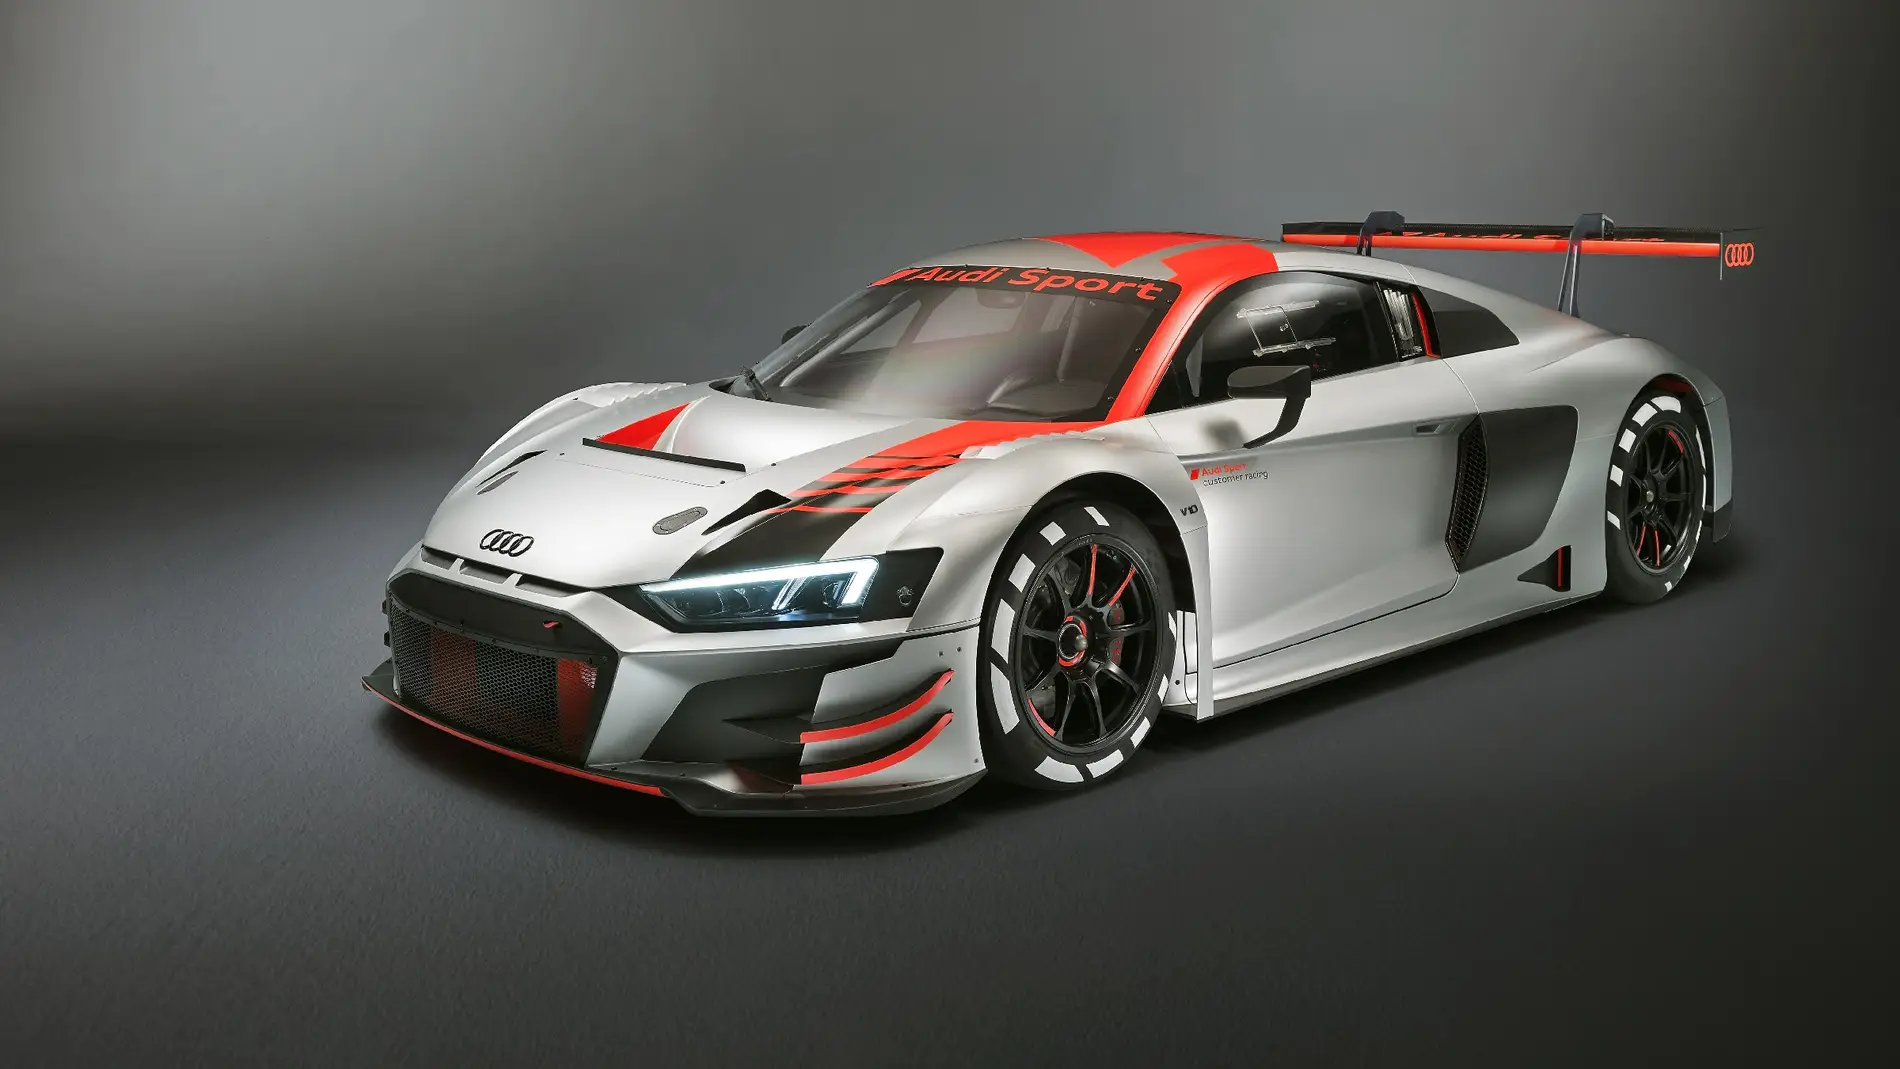 Solo para competir. Audi actualiza su R8 LMS GT3 para seguir ganando